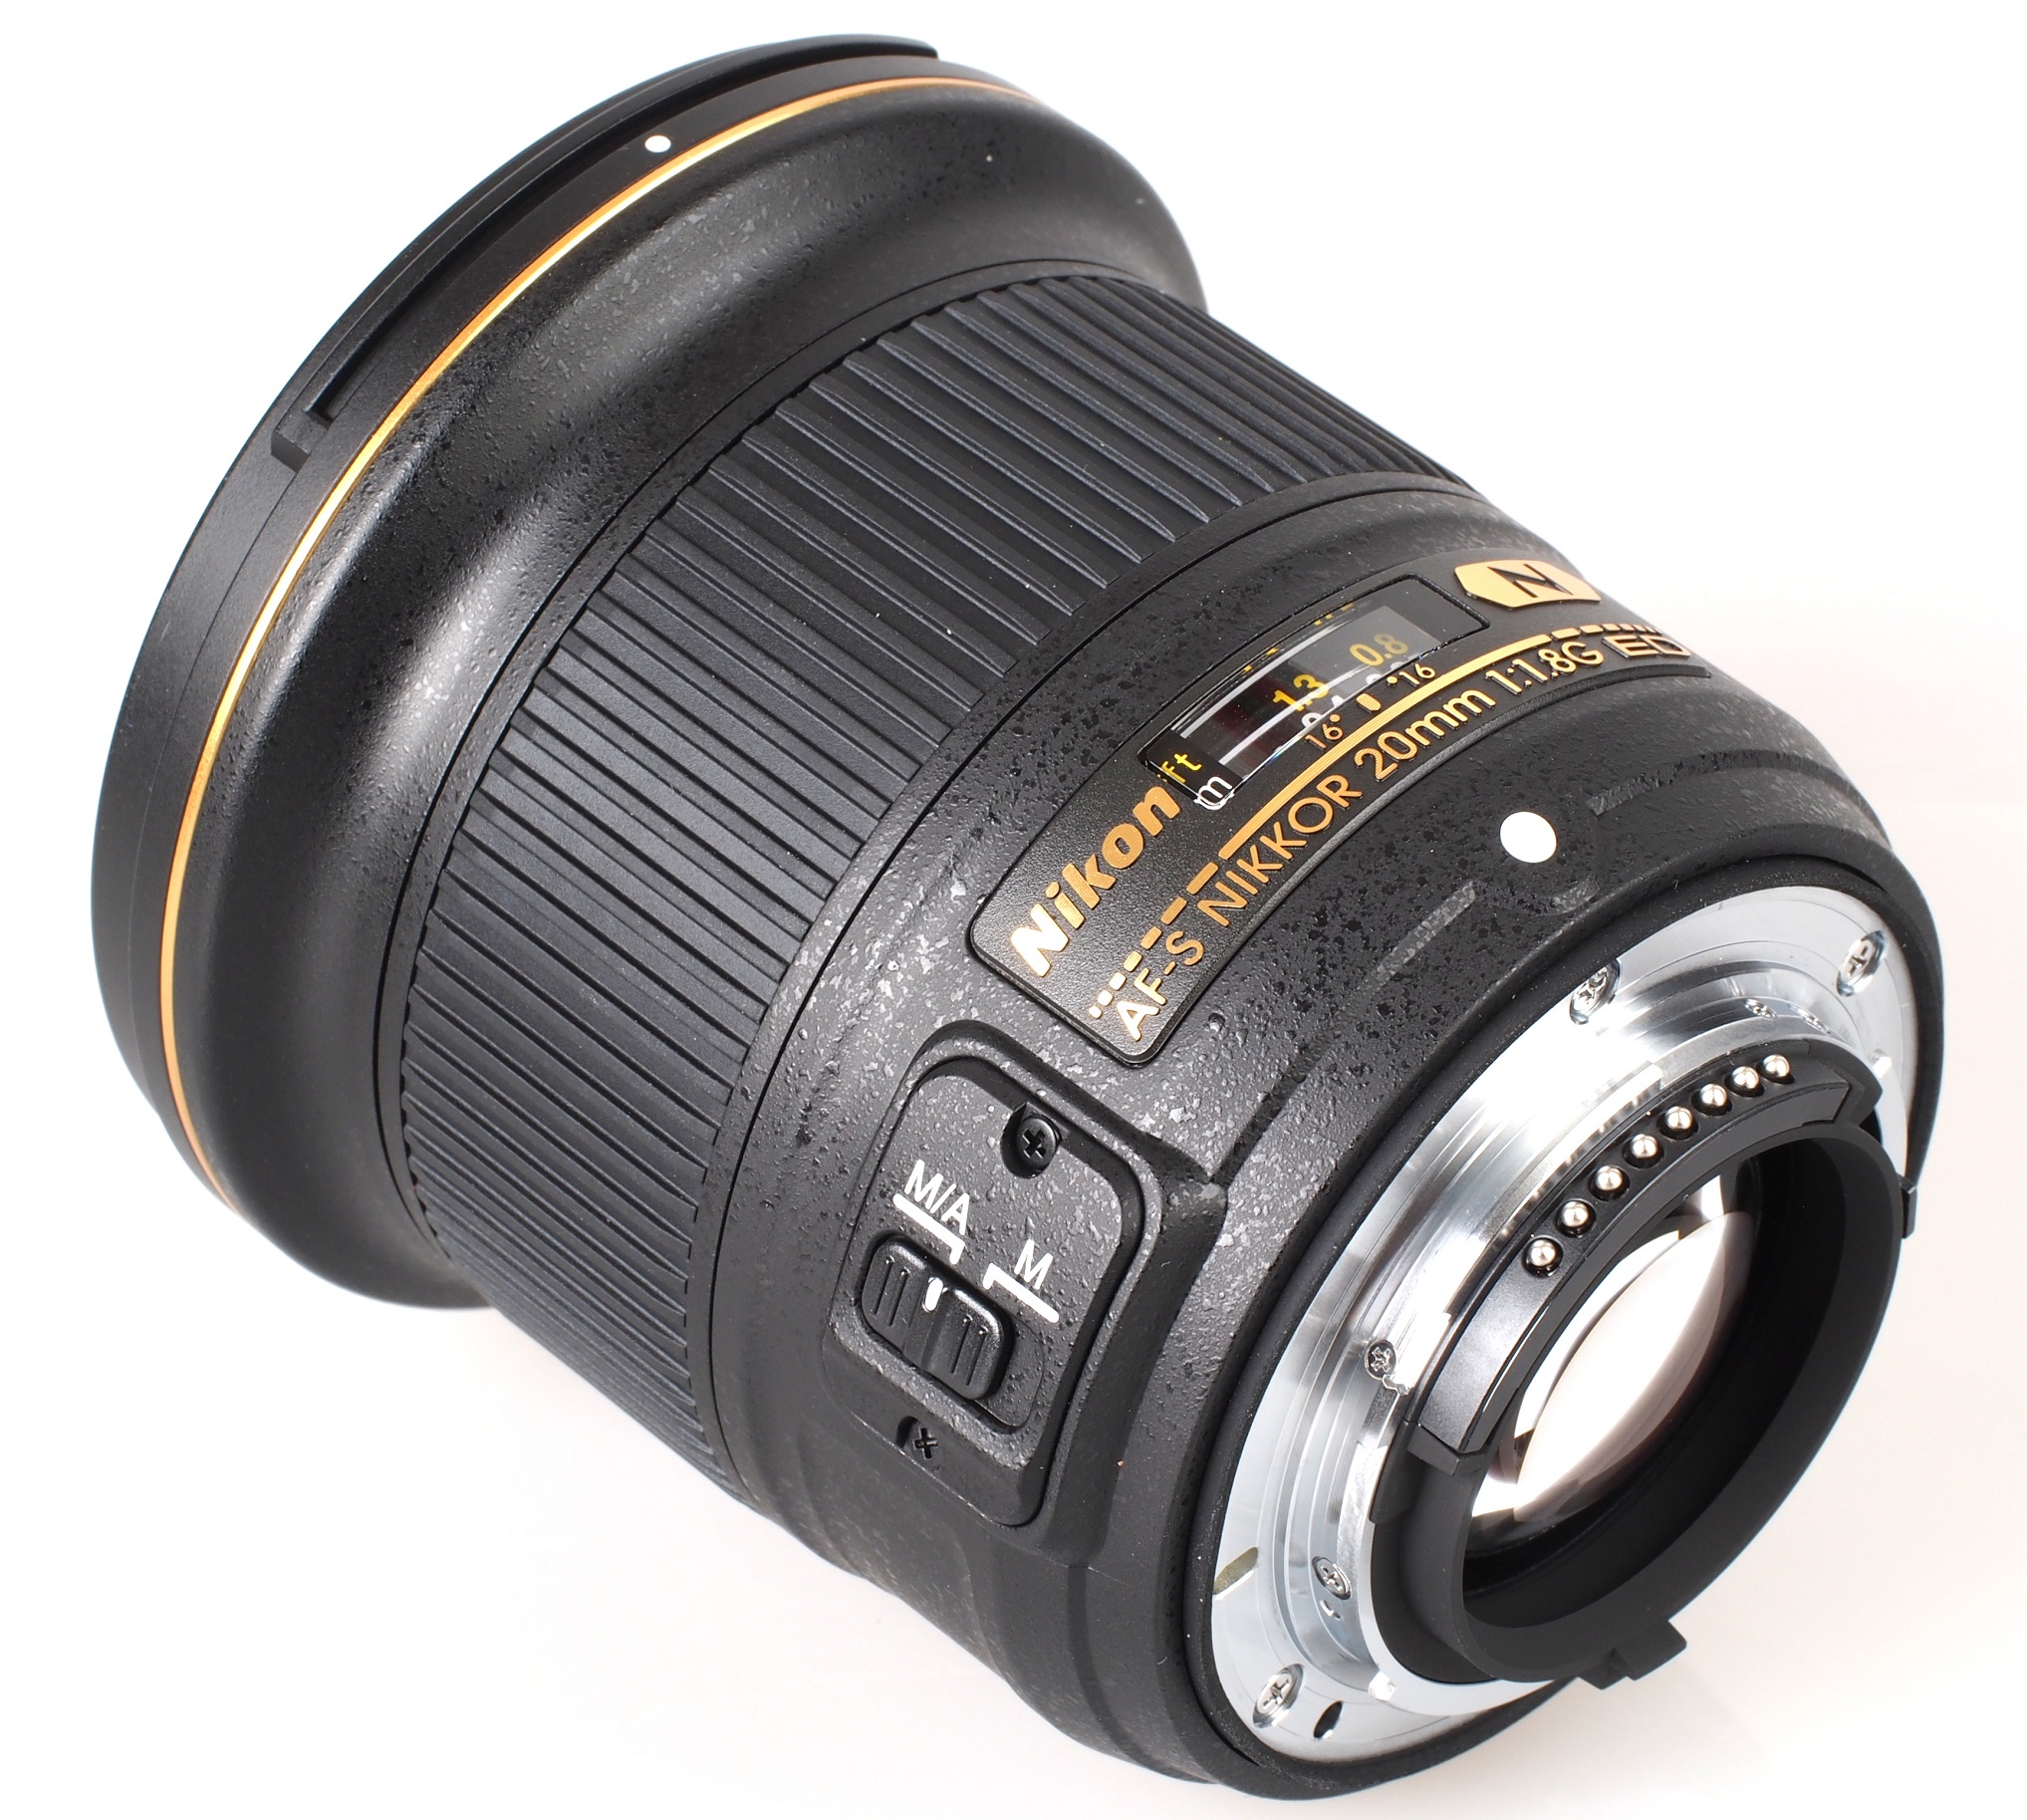 Nikon AF-S Nikkor 20mm f/1.8G ED Lens Review